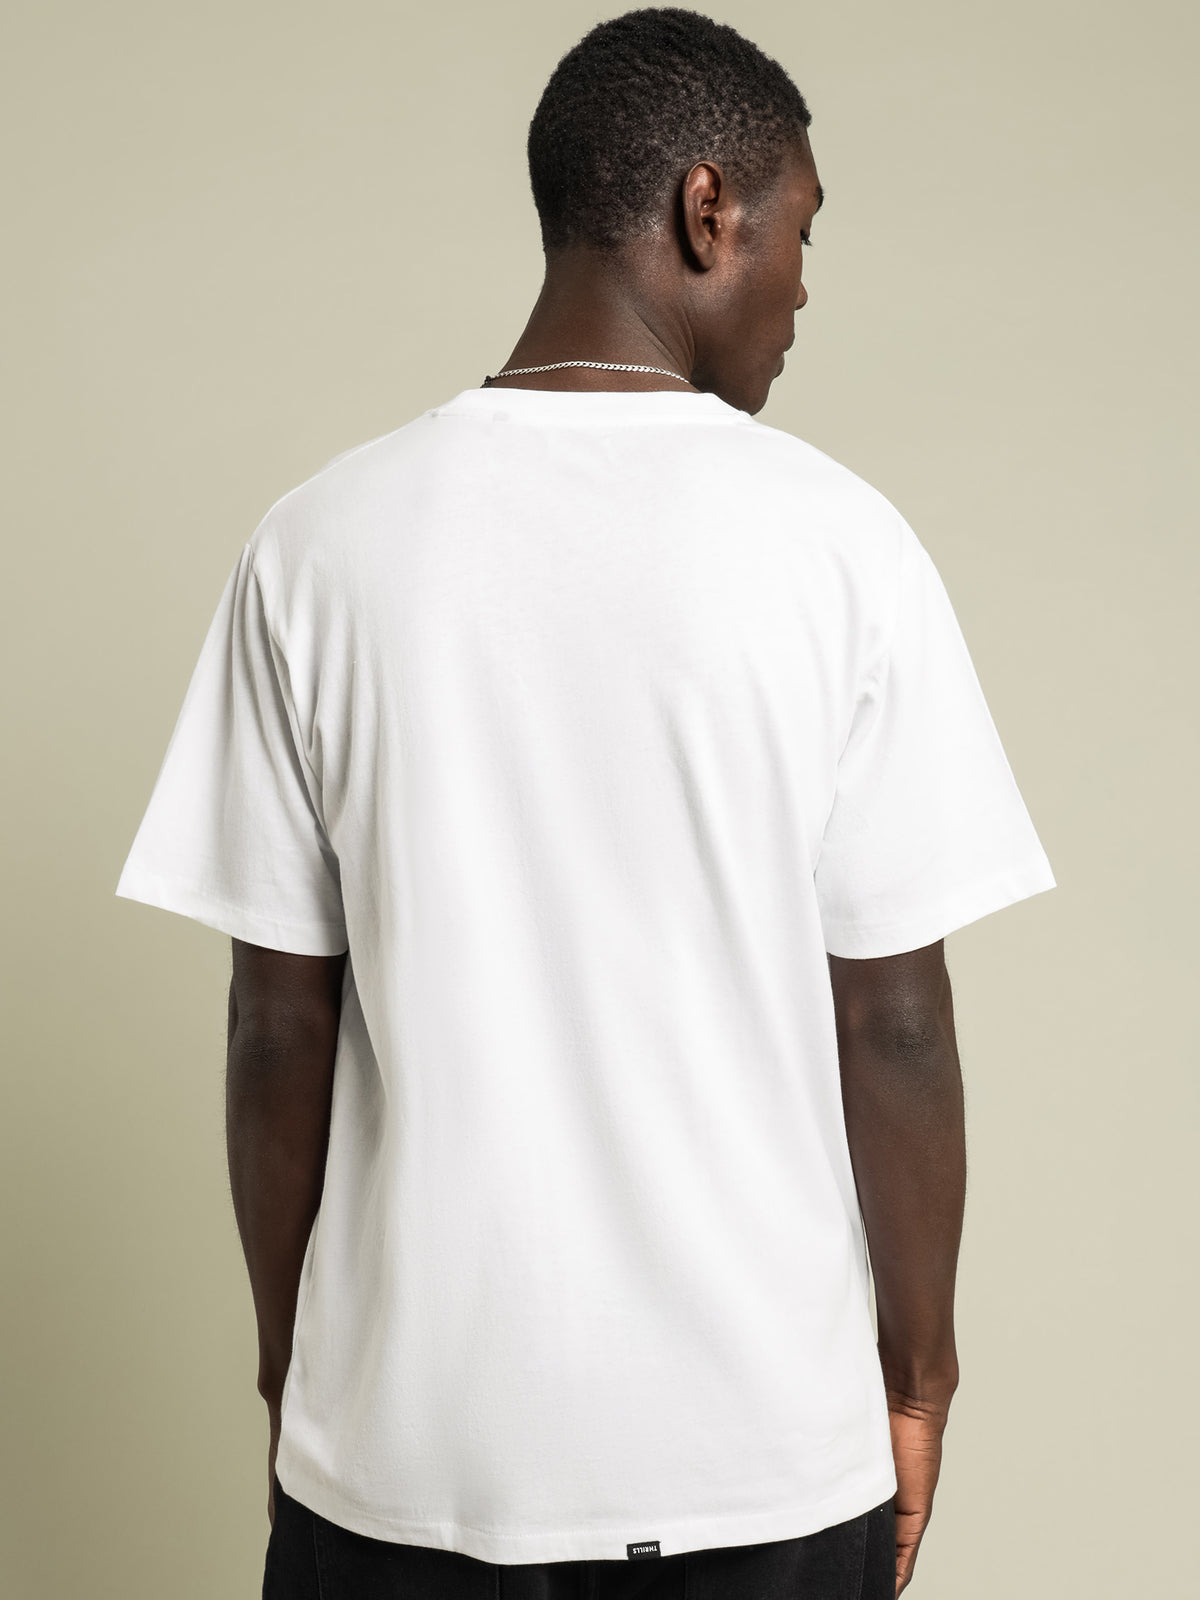 Minimal Thrills Merch Fit T-Shirt in White